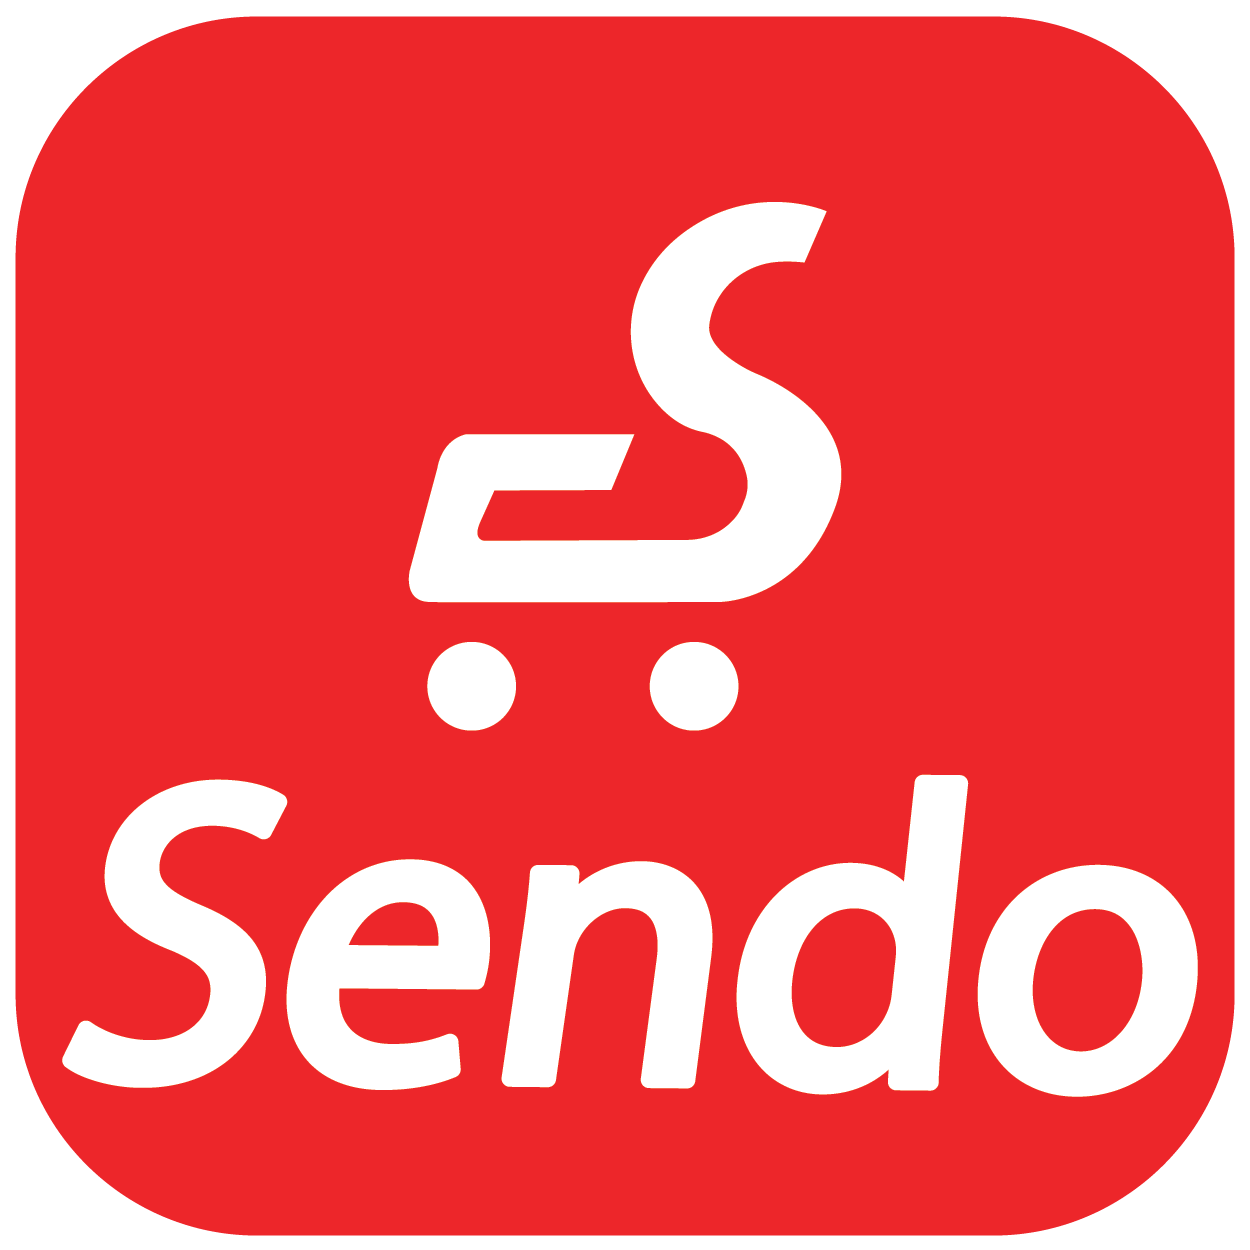 Mã giảm giá Sendo, Voucher khuyến mãi Sendo tháng 7/2021 mới nhất